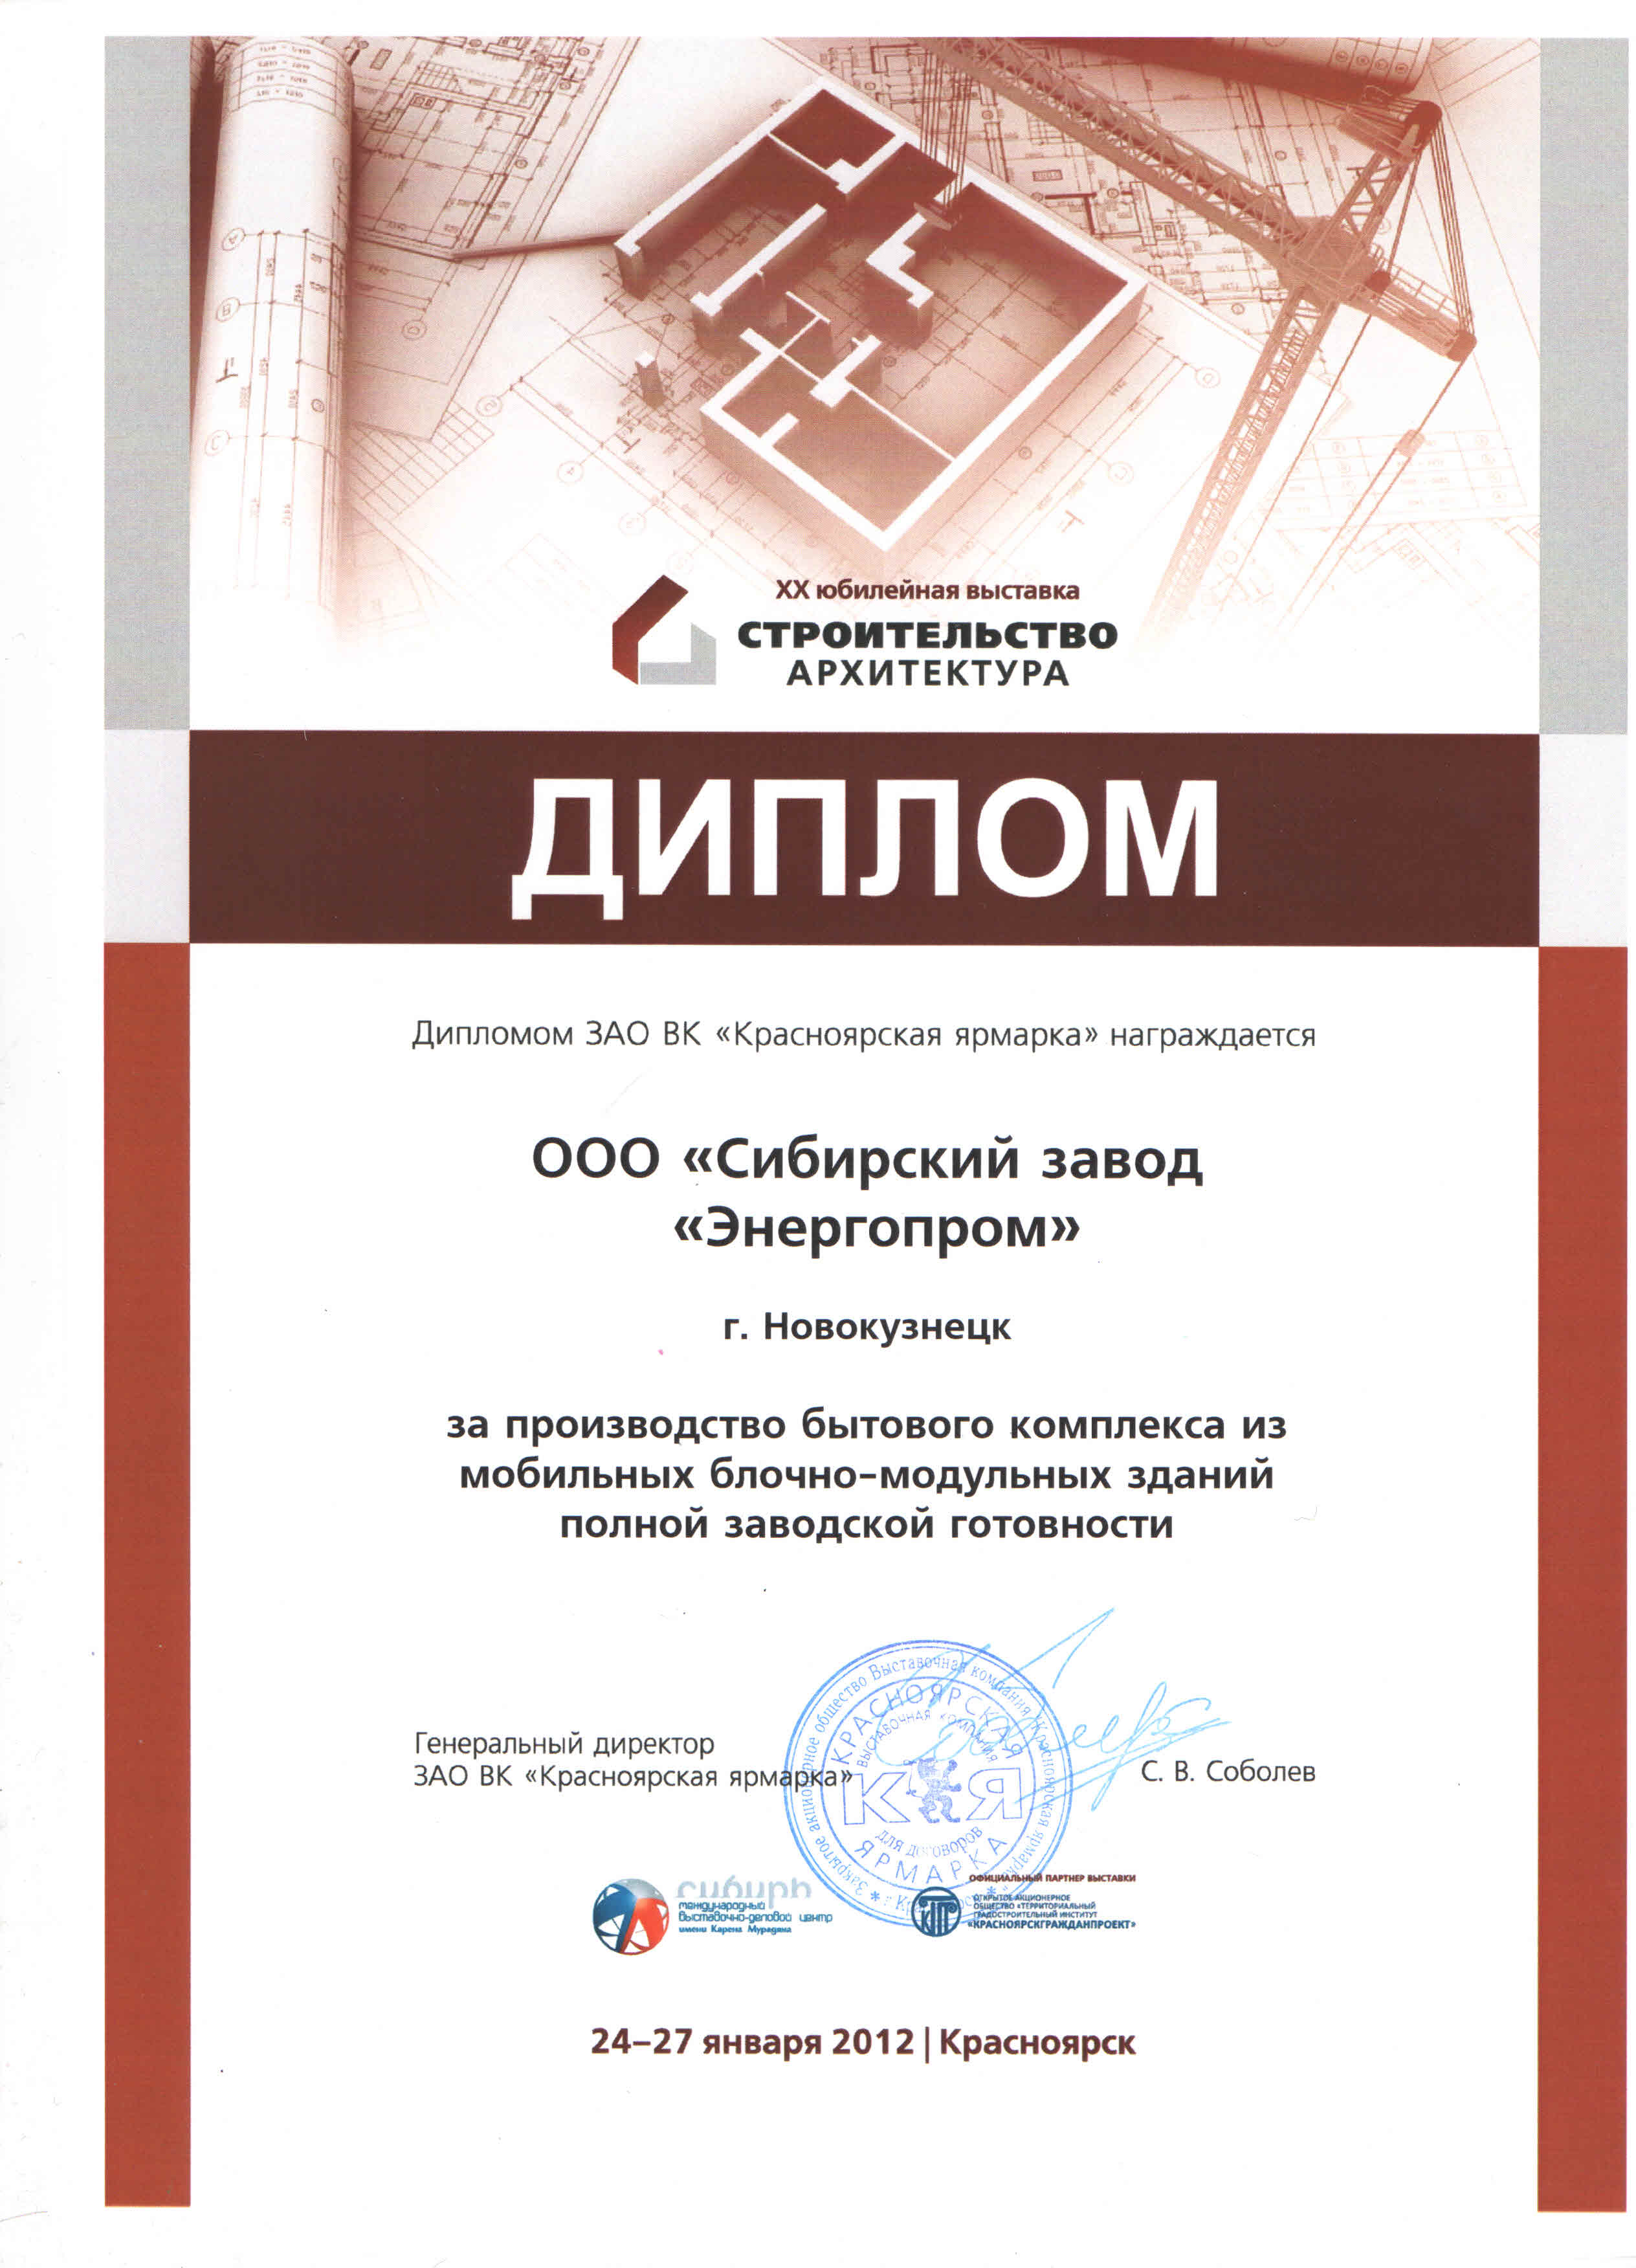 Диплом выставки "Строительство и архитектура-2012" (ООО "СЗЭП")